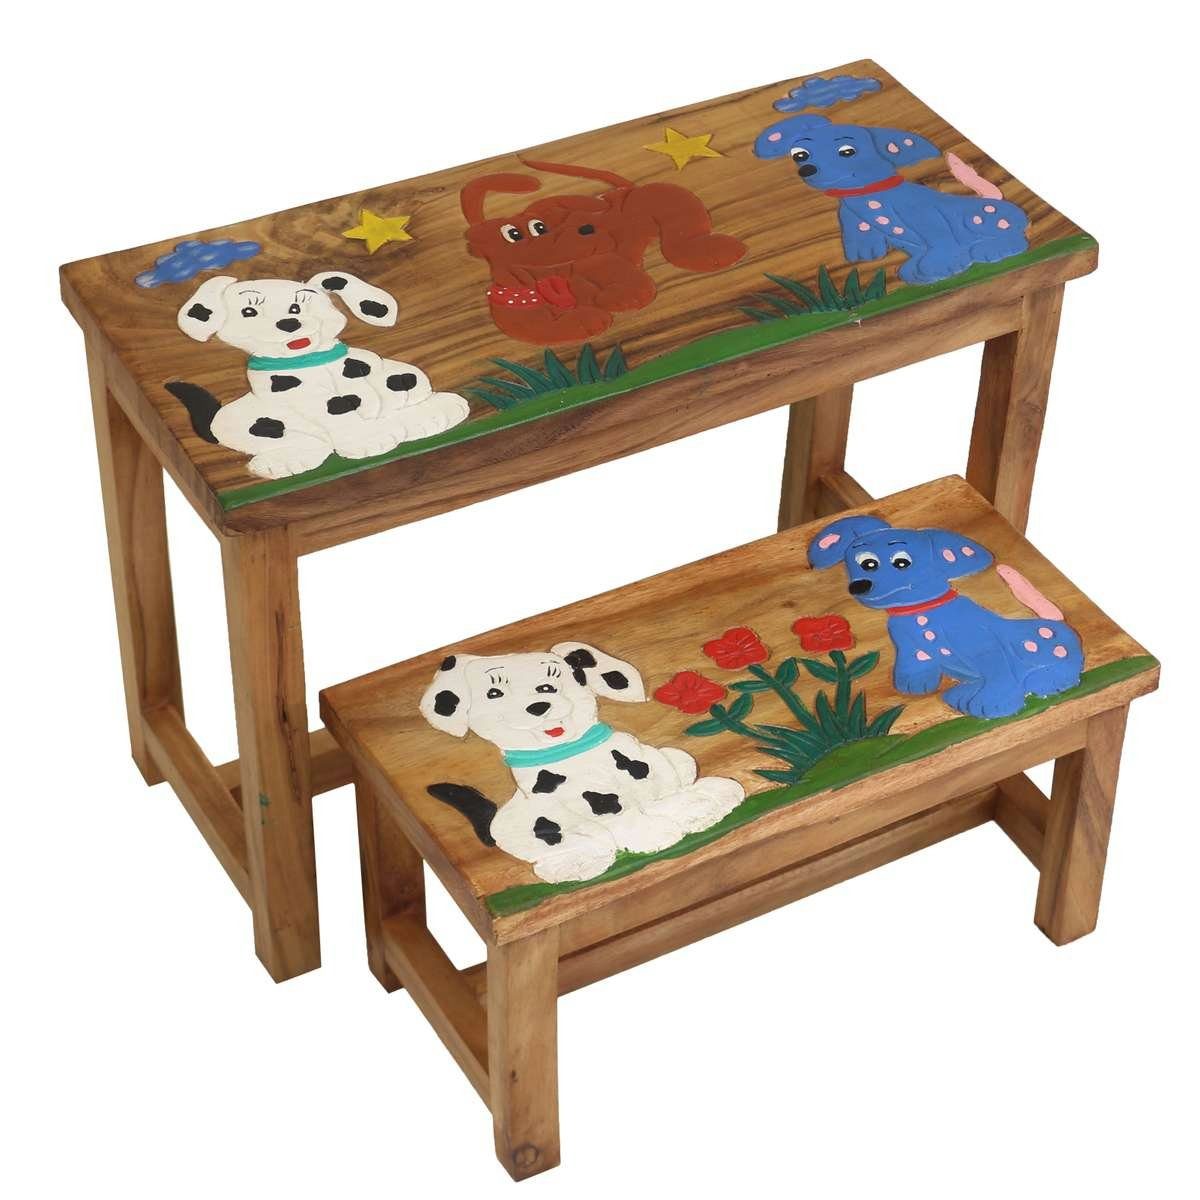 Oriental Galerie Kindersitzgruppe Kindermöbel Set Bank mit Tisch Hund, traditionelle Herstellung in Handarbeit im Ursprungsland